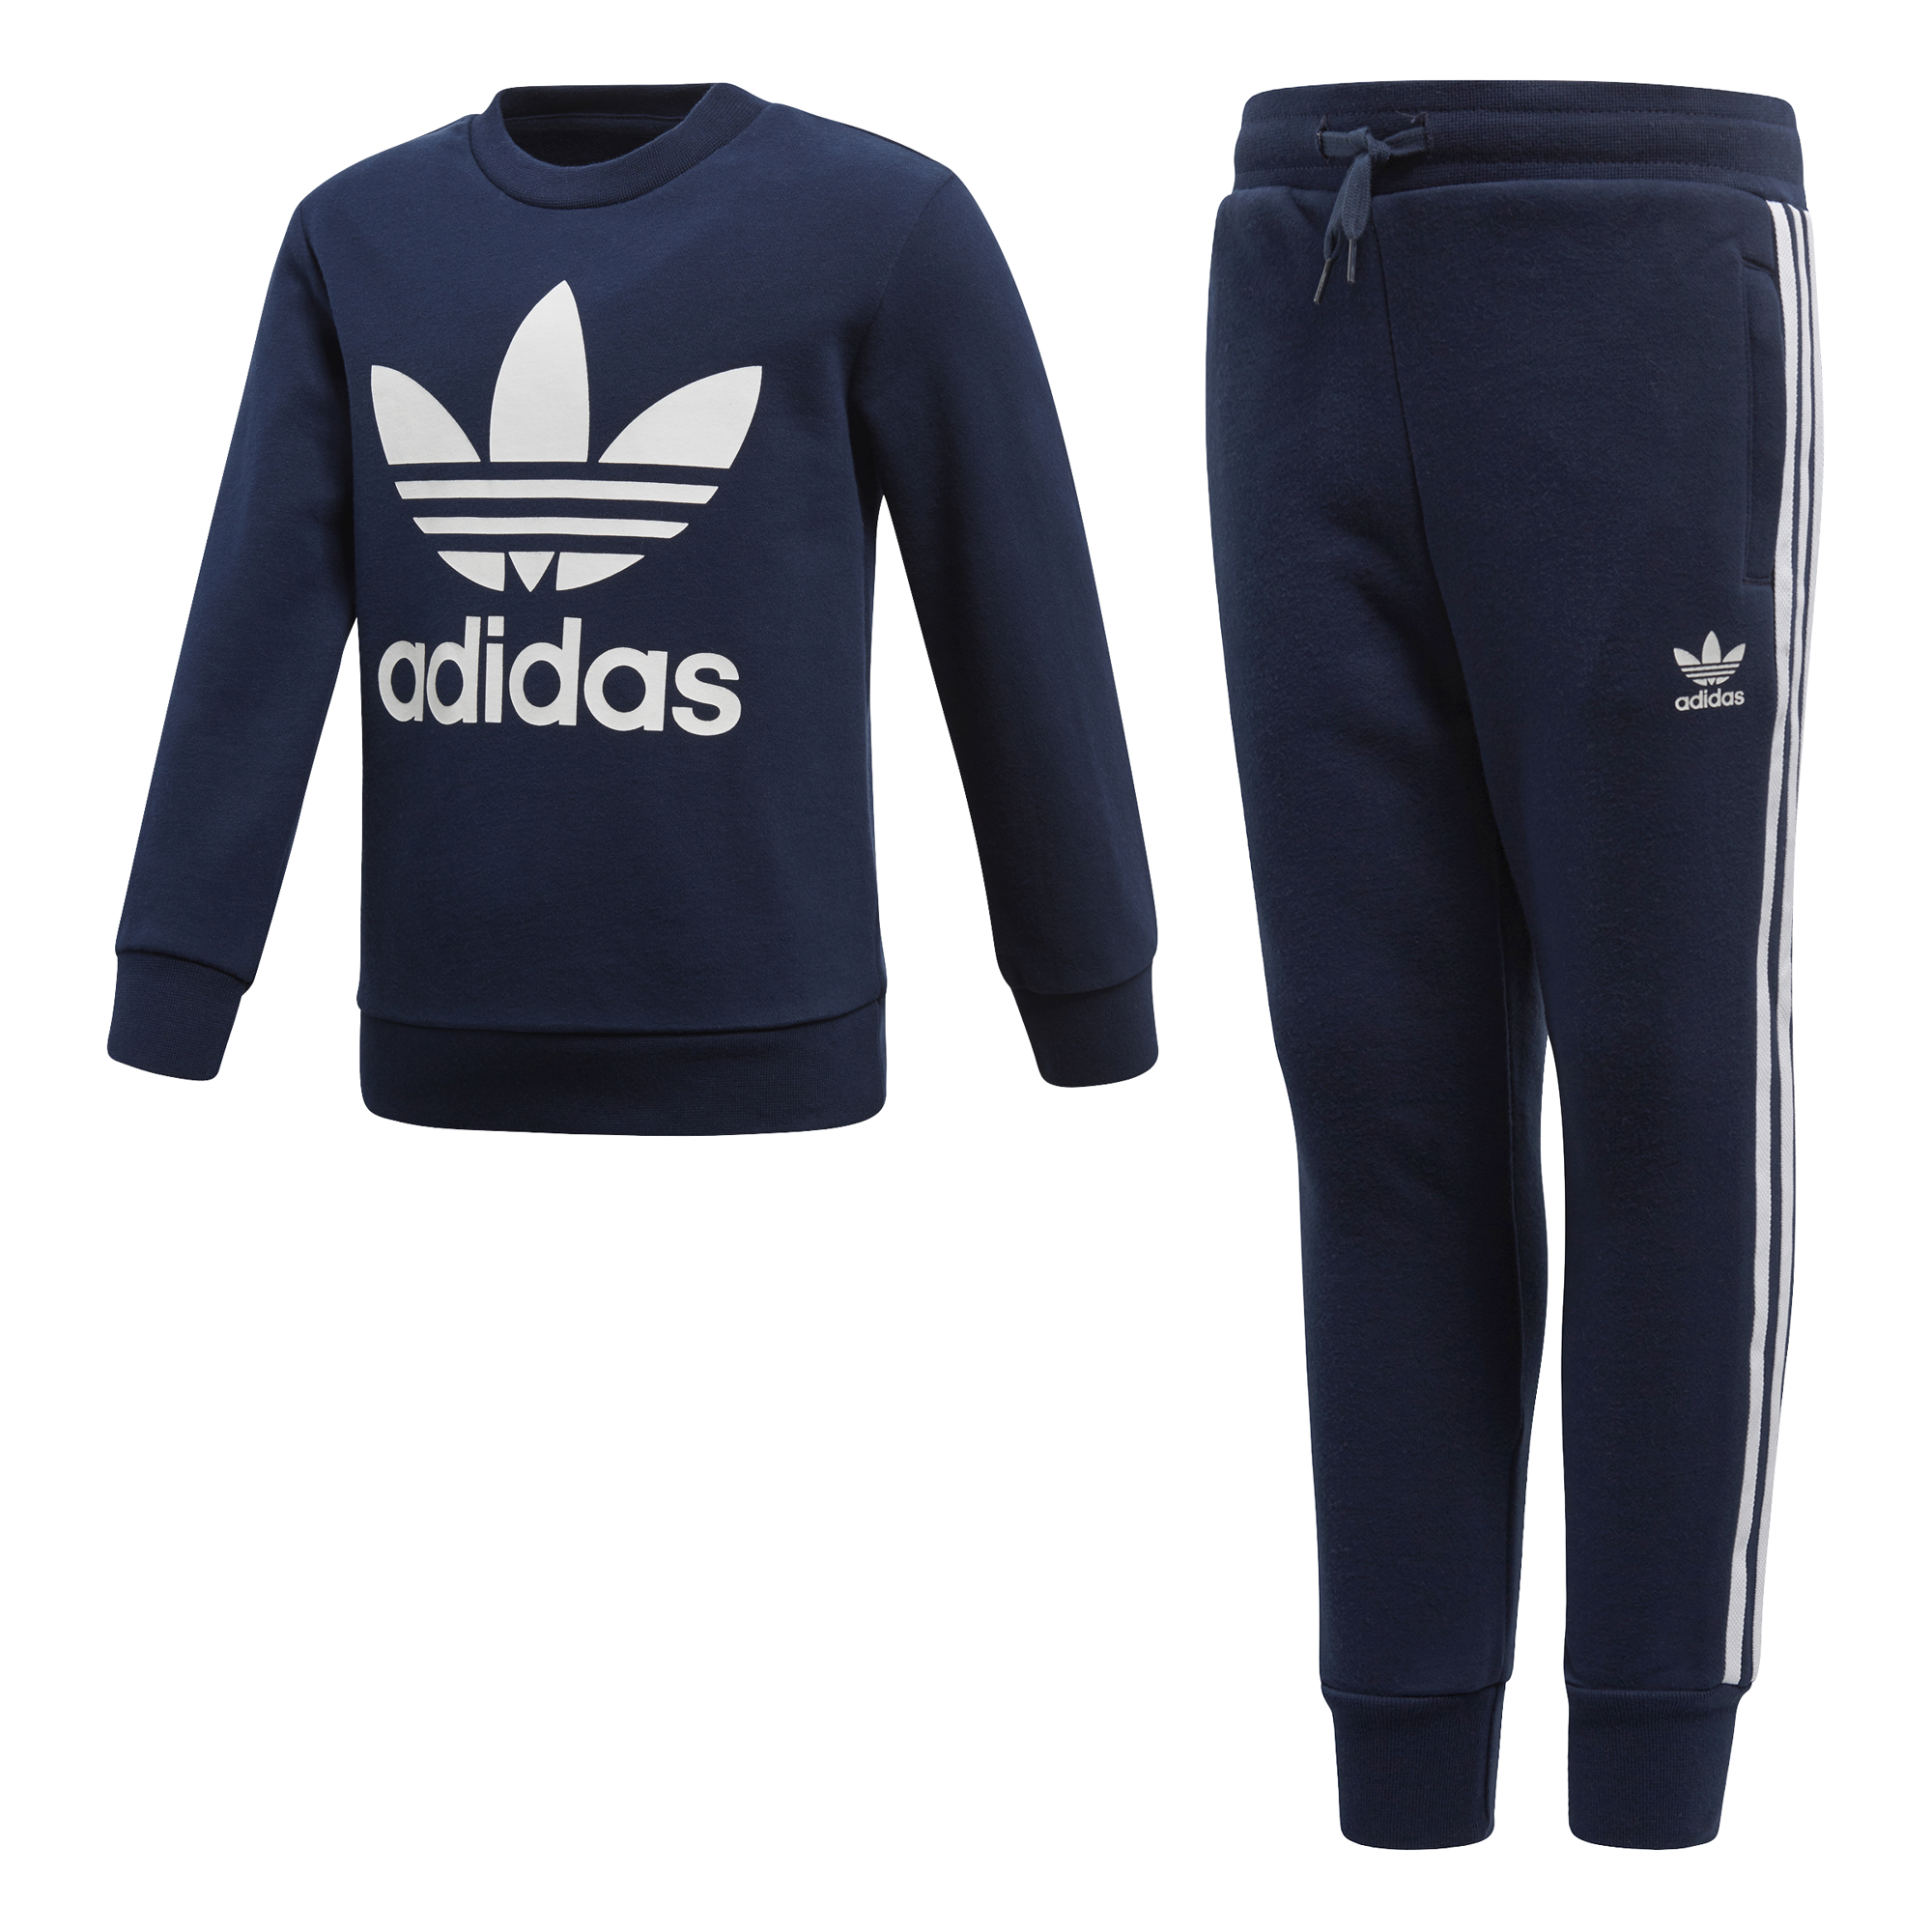 Adidas Originals Trefoil Track Suit Crew Kids